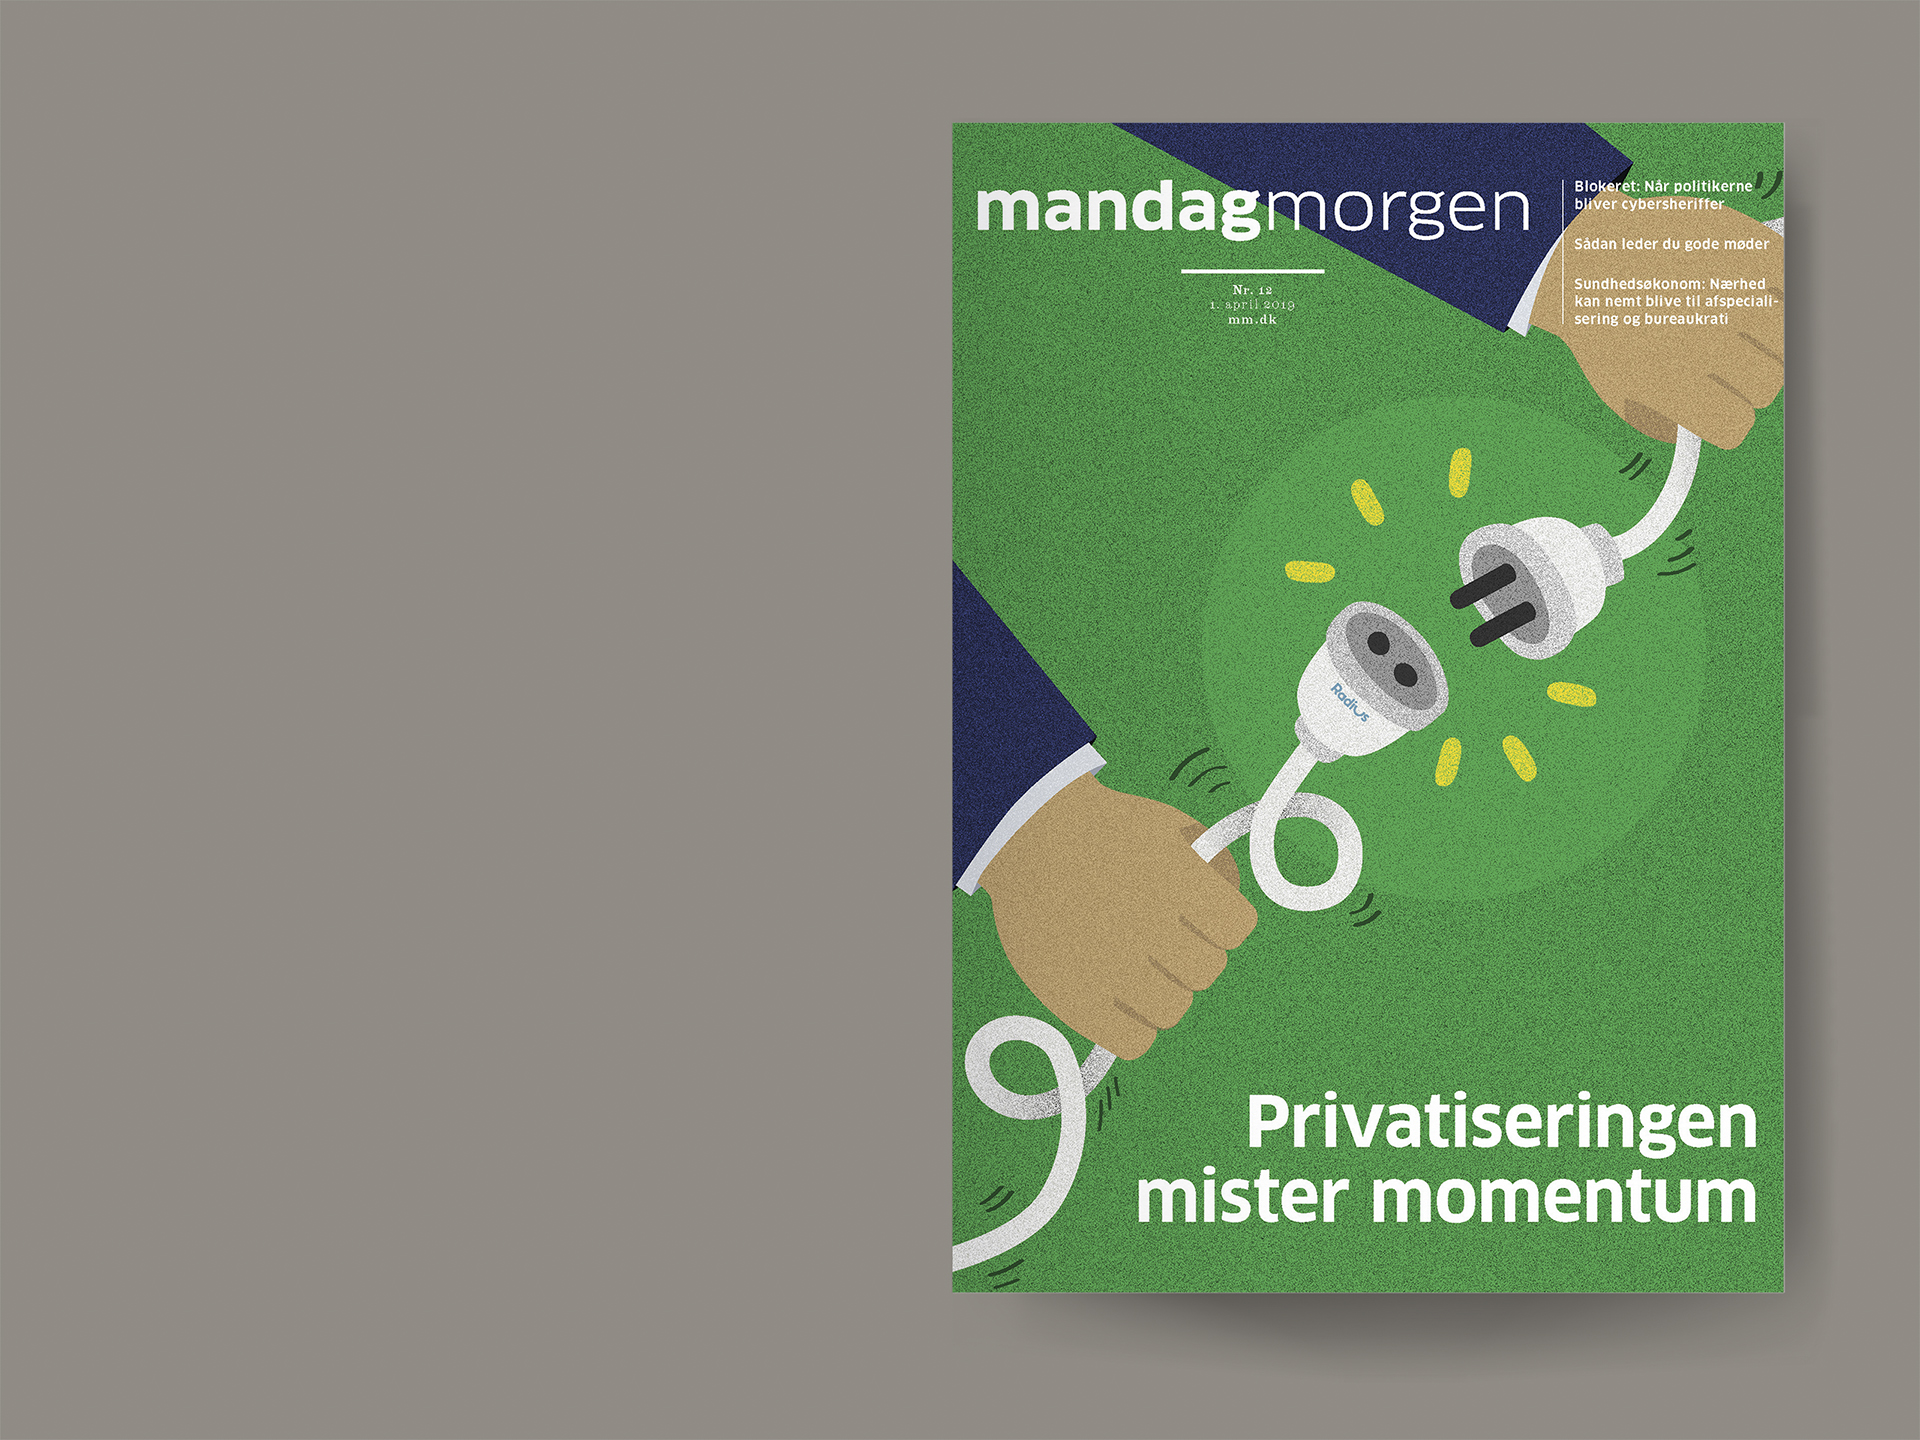 Mandag Morgen magazine cover 201912